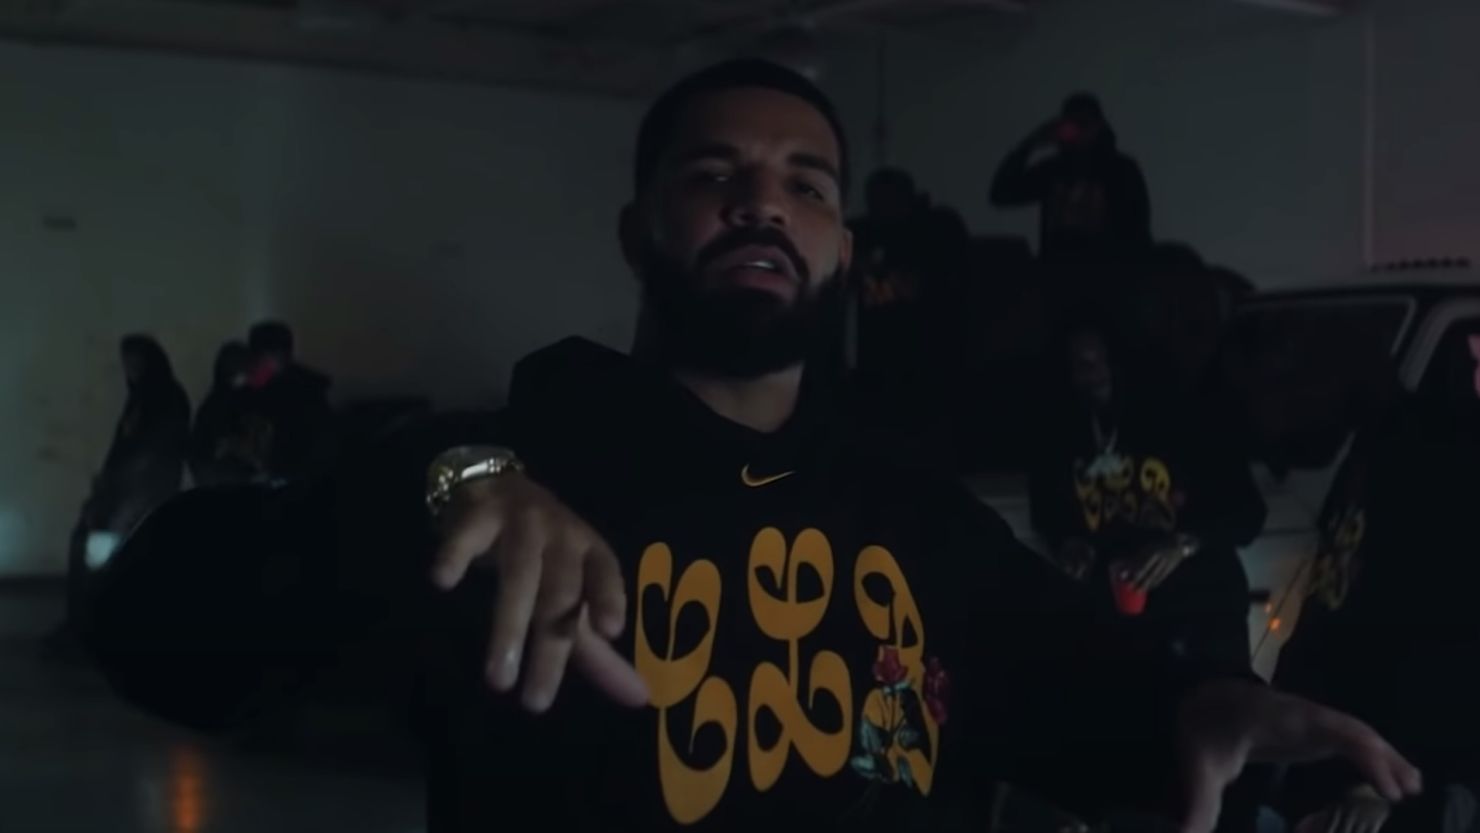 Drake - Not you too [tradução] 